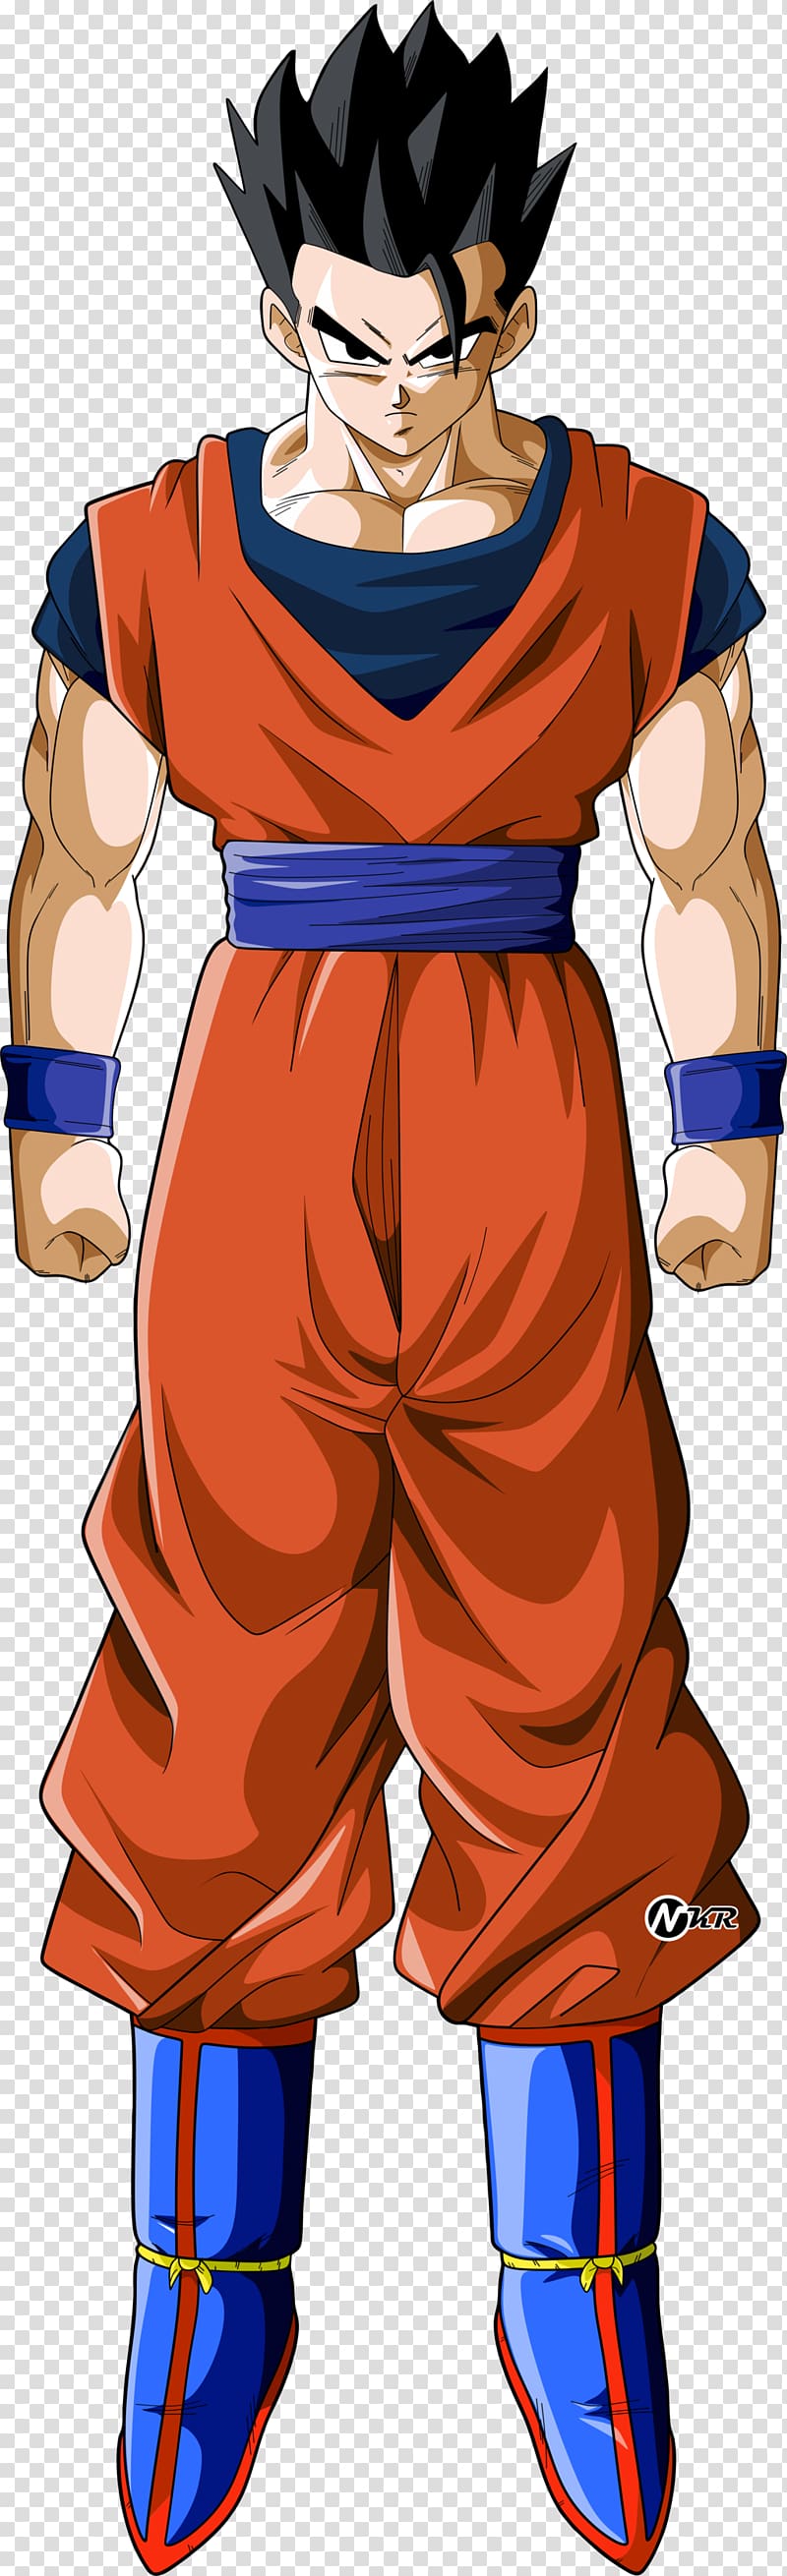 Vegeta Goku Majin Buu Frieza Gohan, dragon ball z, cartoon, fictional  Character png